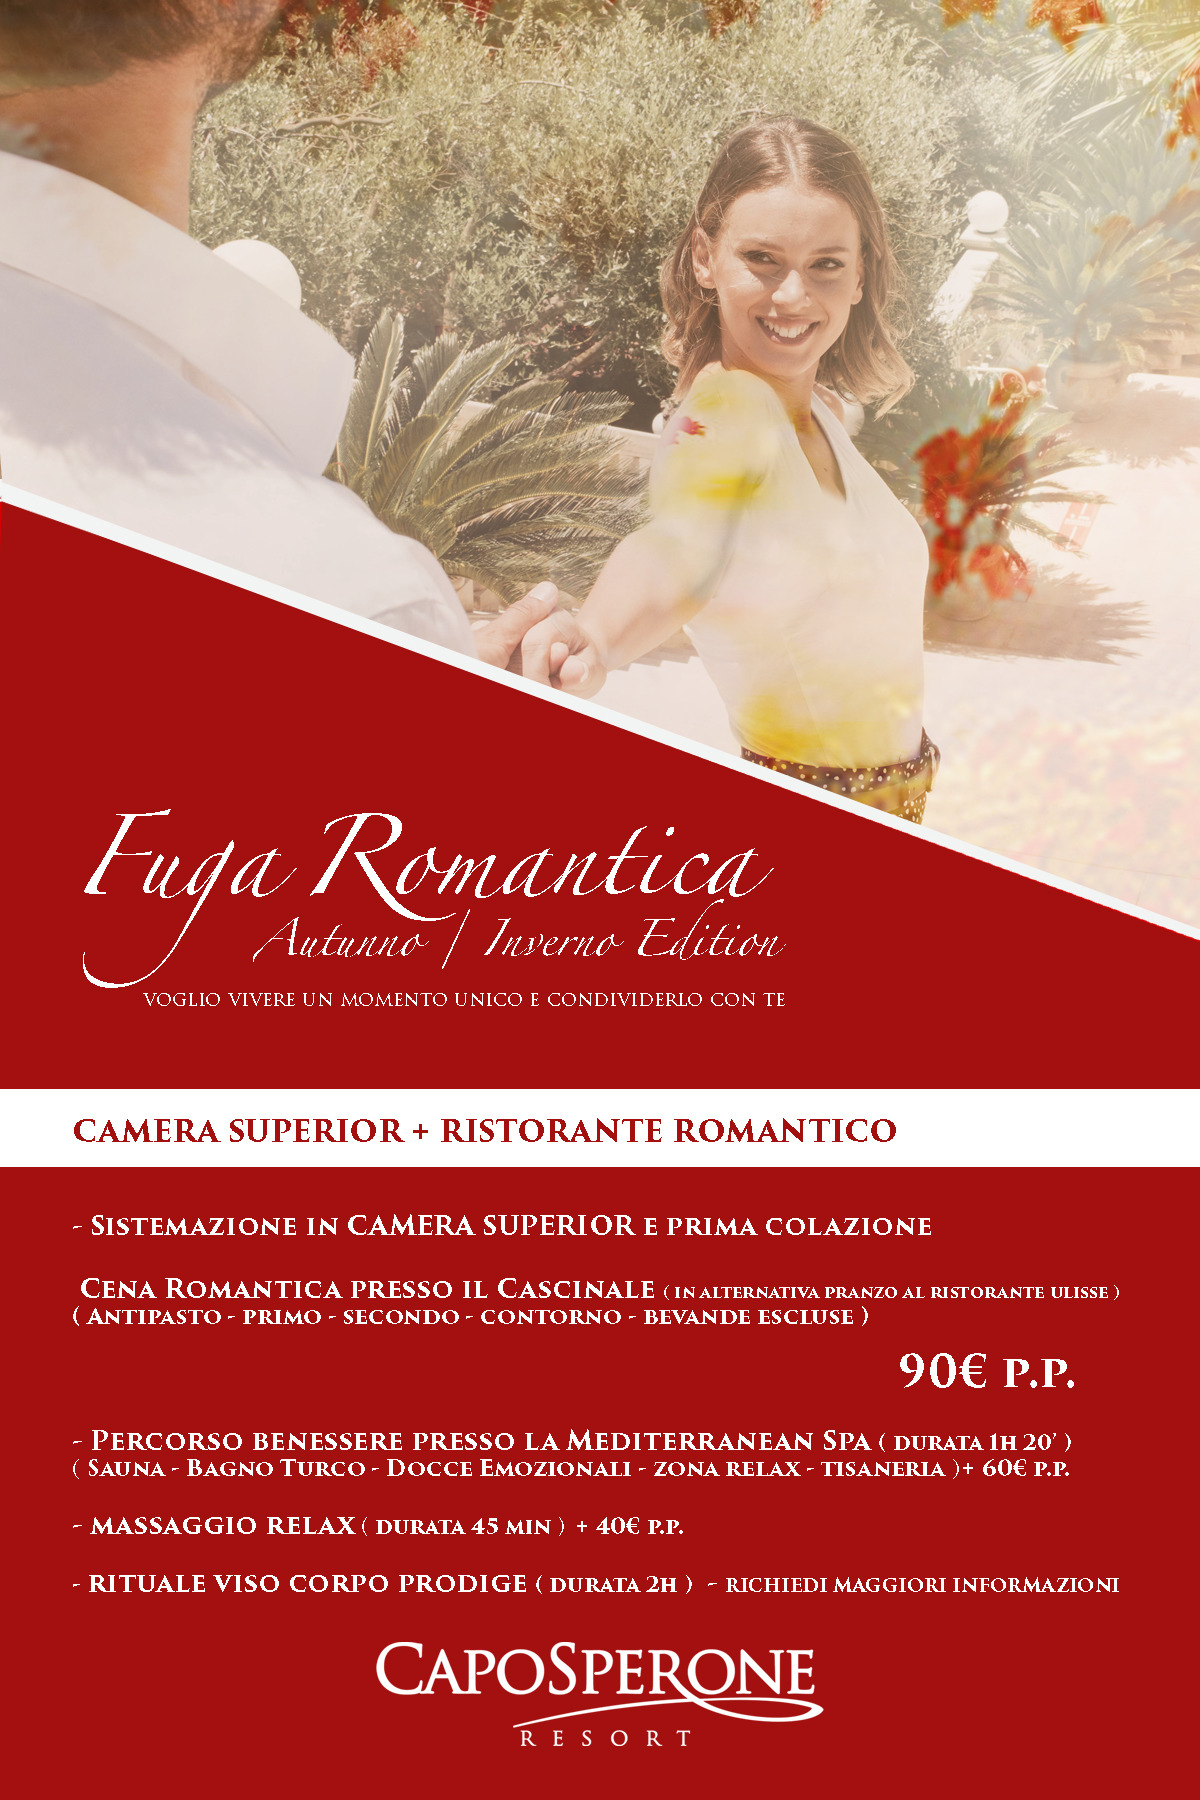 Fuga Romantica Inverno Edition 3